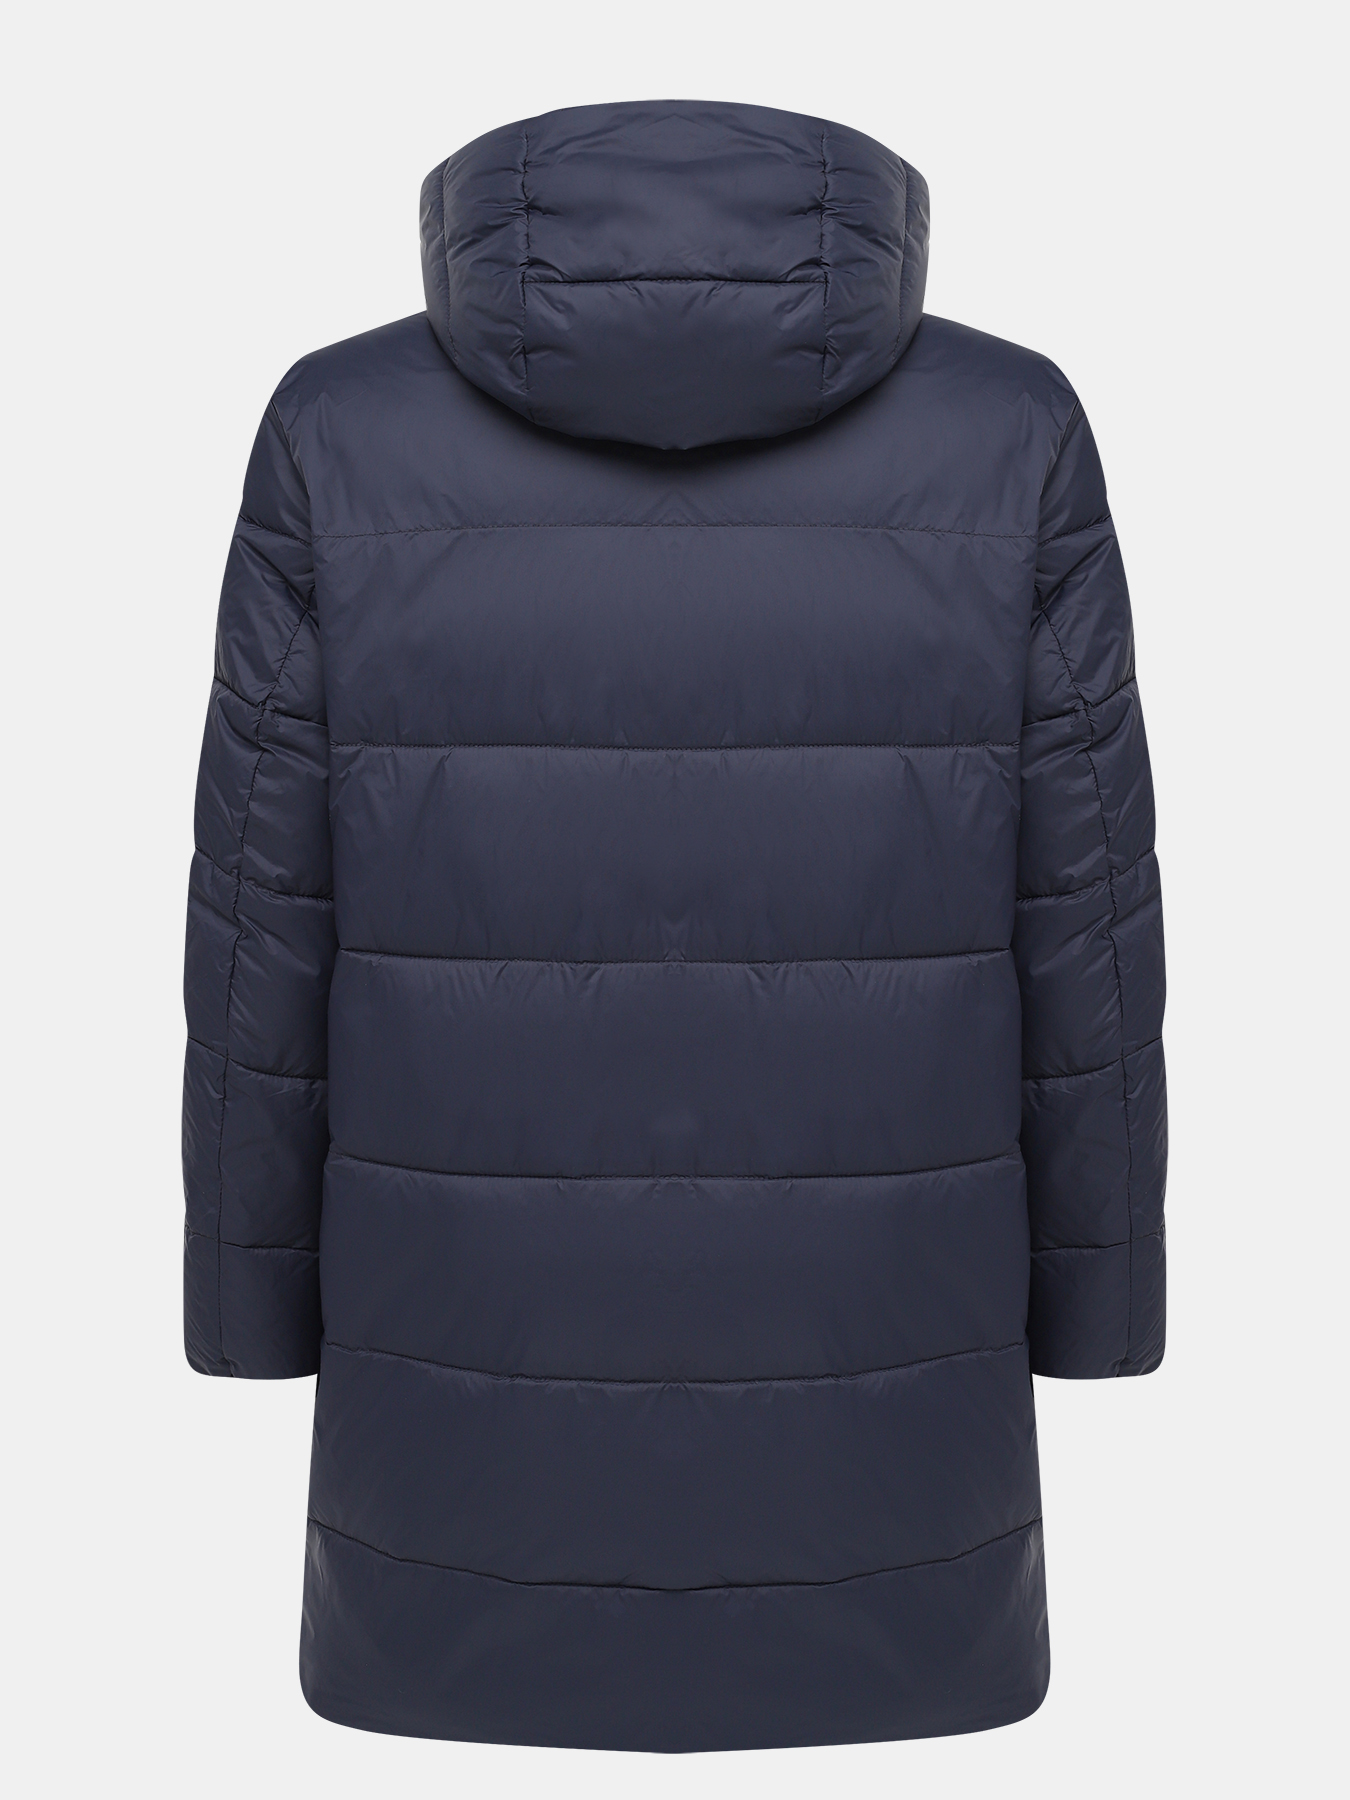 Удлиненная куртка Mati HUGO 426056-044, цвет темно-синий, размер 50-52 - фото 2